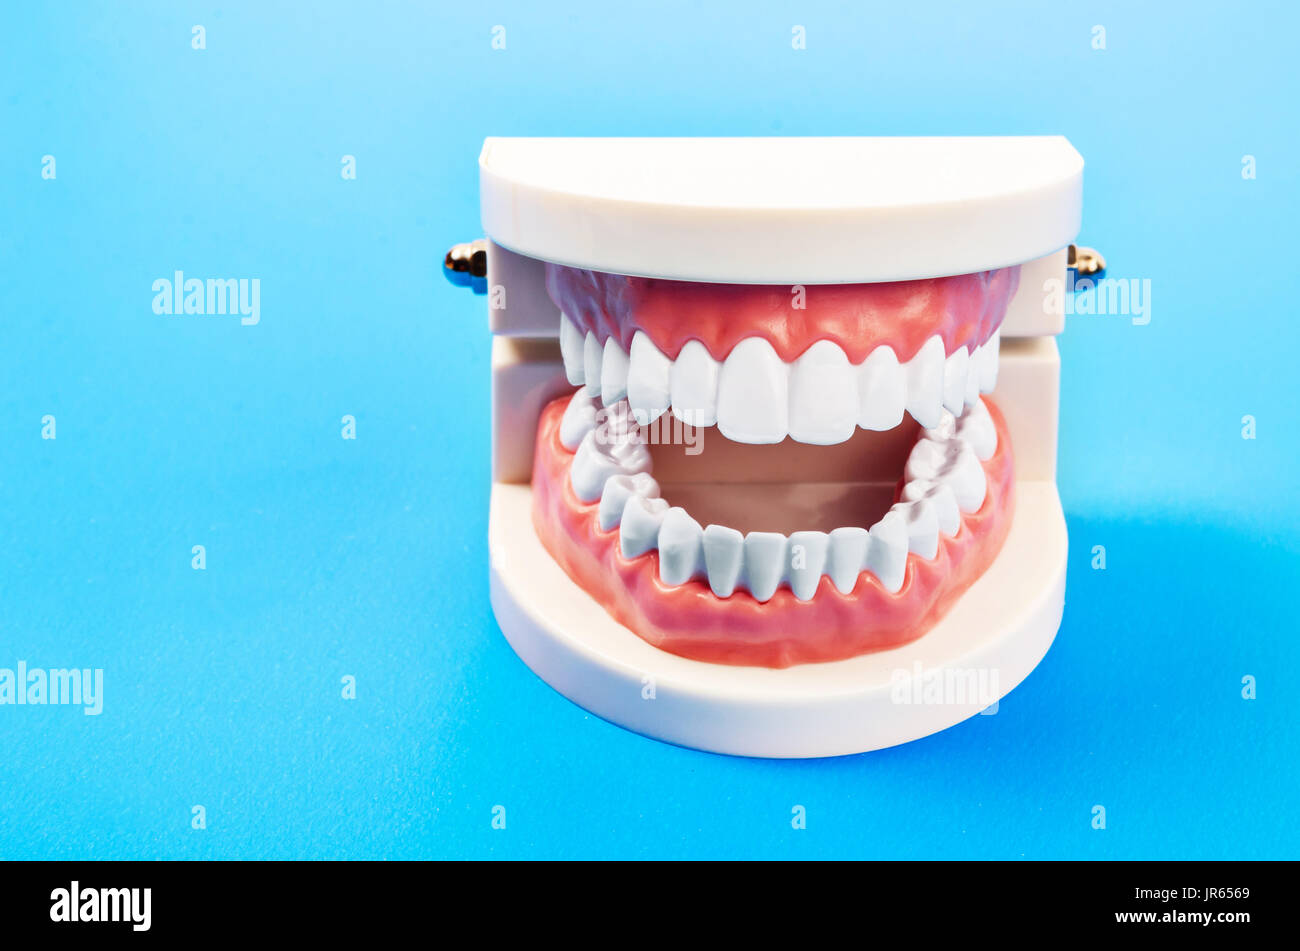 Plastica denti dentale modello di un set completo di denti umani Foto Stock